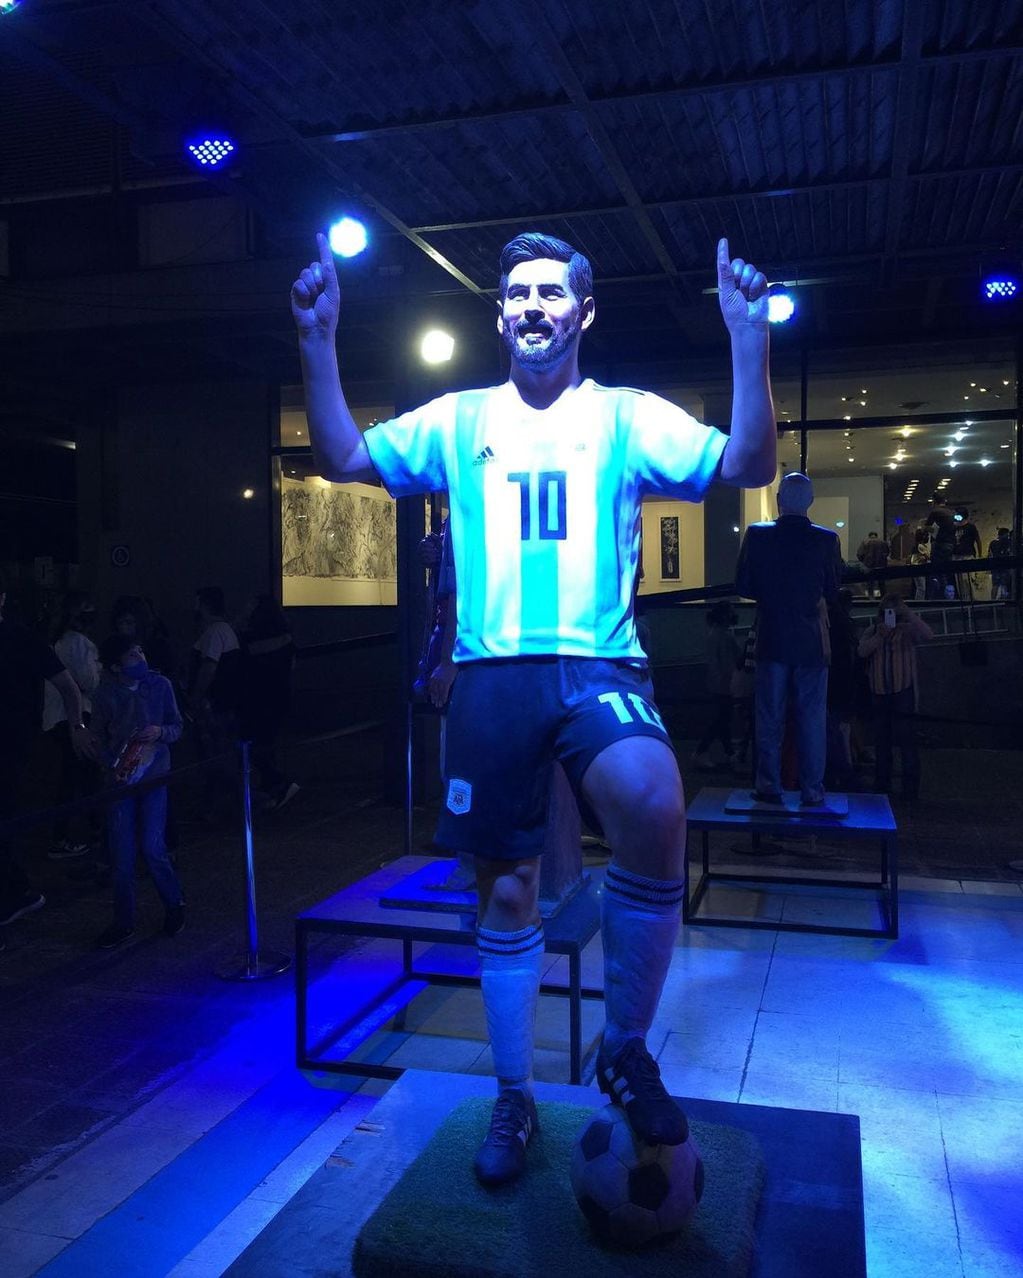 Una estatua de Lionel Messi se incluyó entre las presentaciones de galerías y artistas.